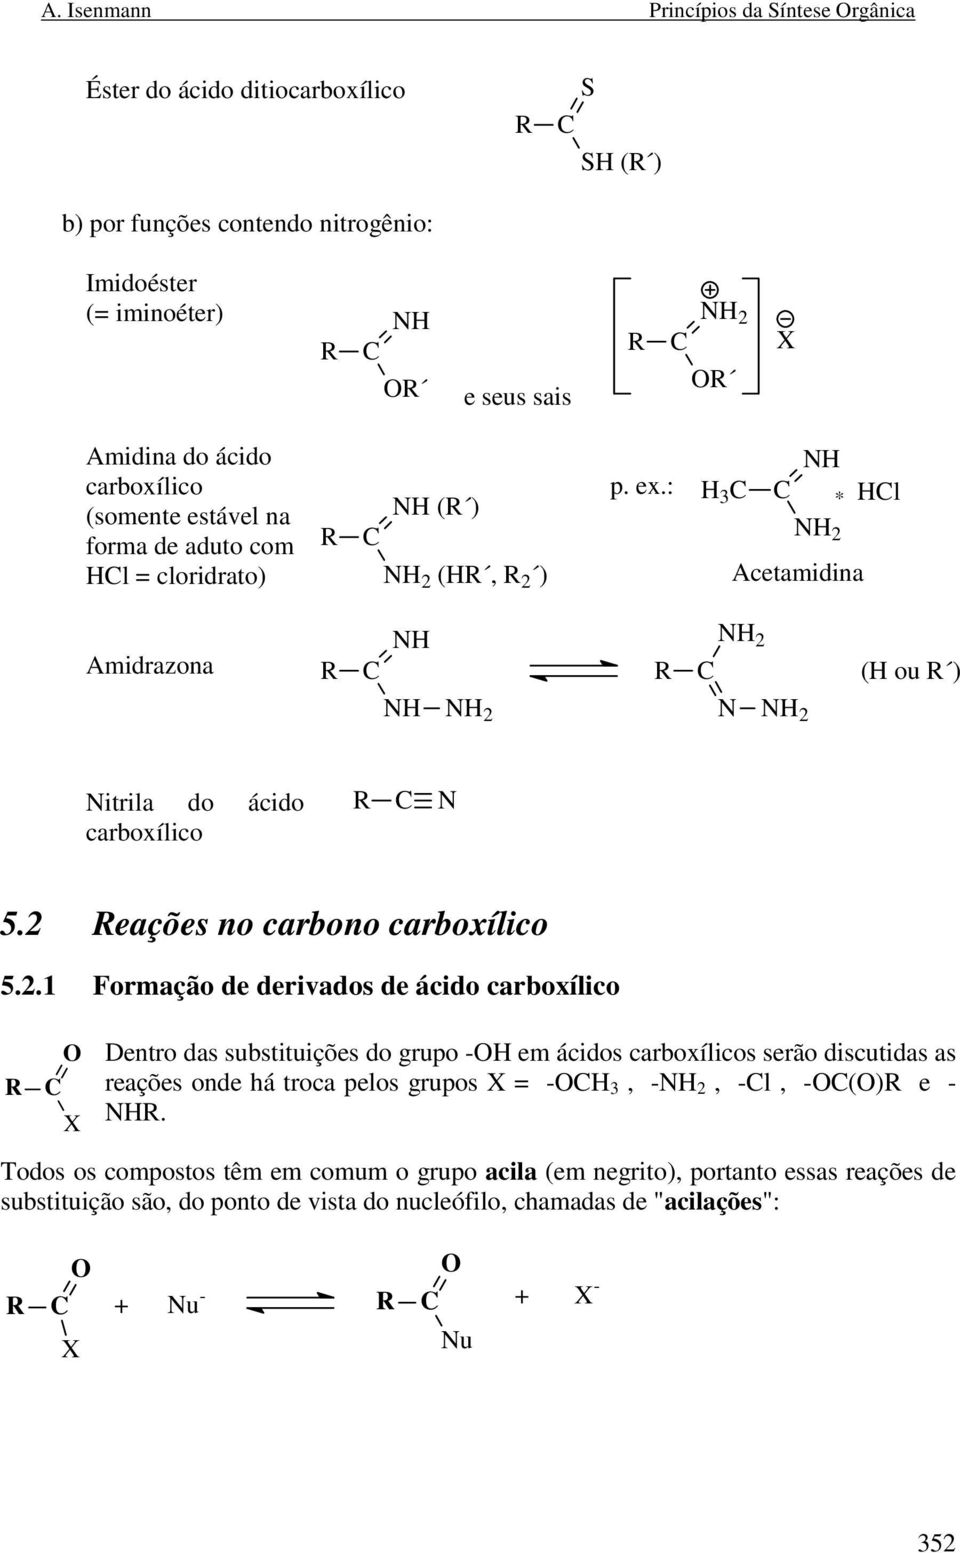 2 eações no carbono carboxílico 5.2.1 Formação de derivados de ácido carboxílico X Dentro das substituições do grupo - em ácidos carboxílicos serão discutidas as reações onde há troca